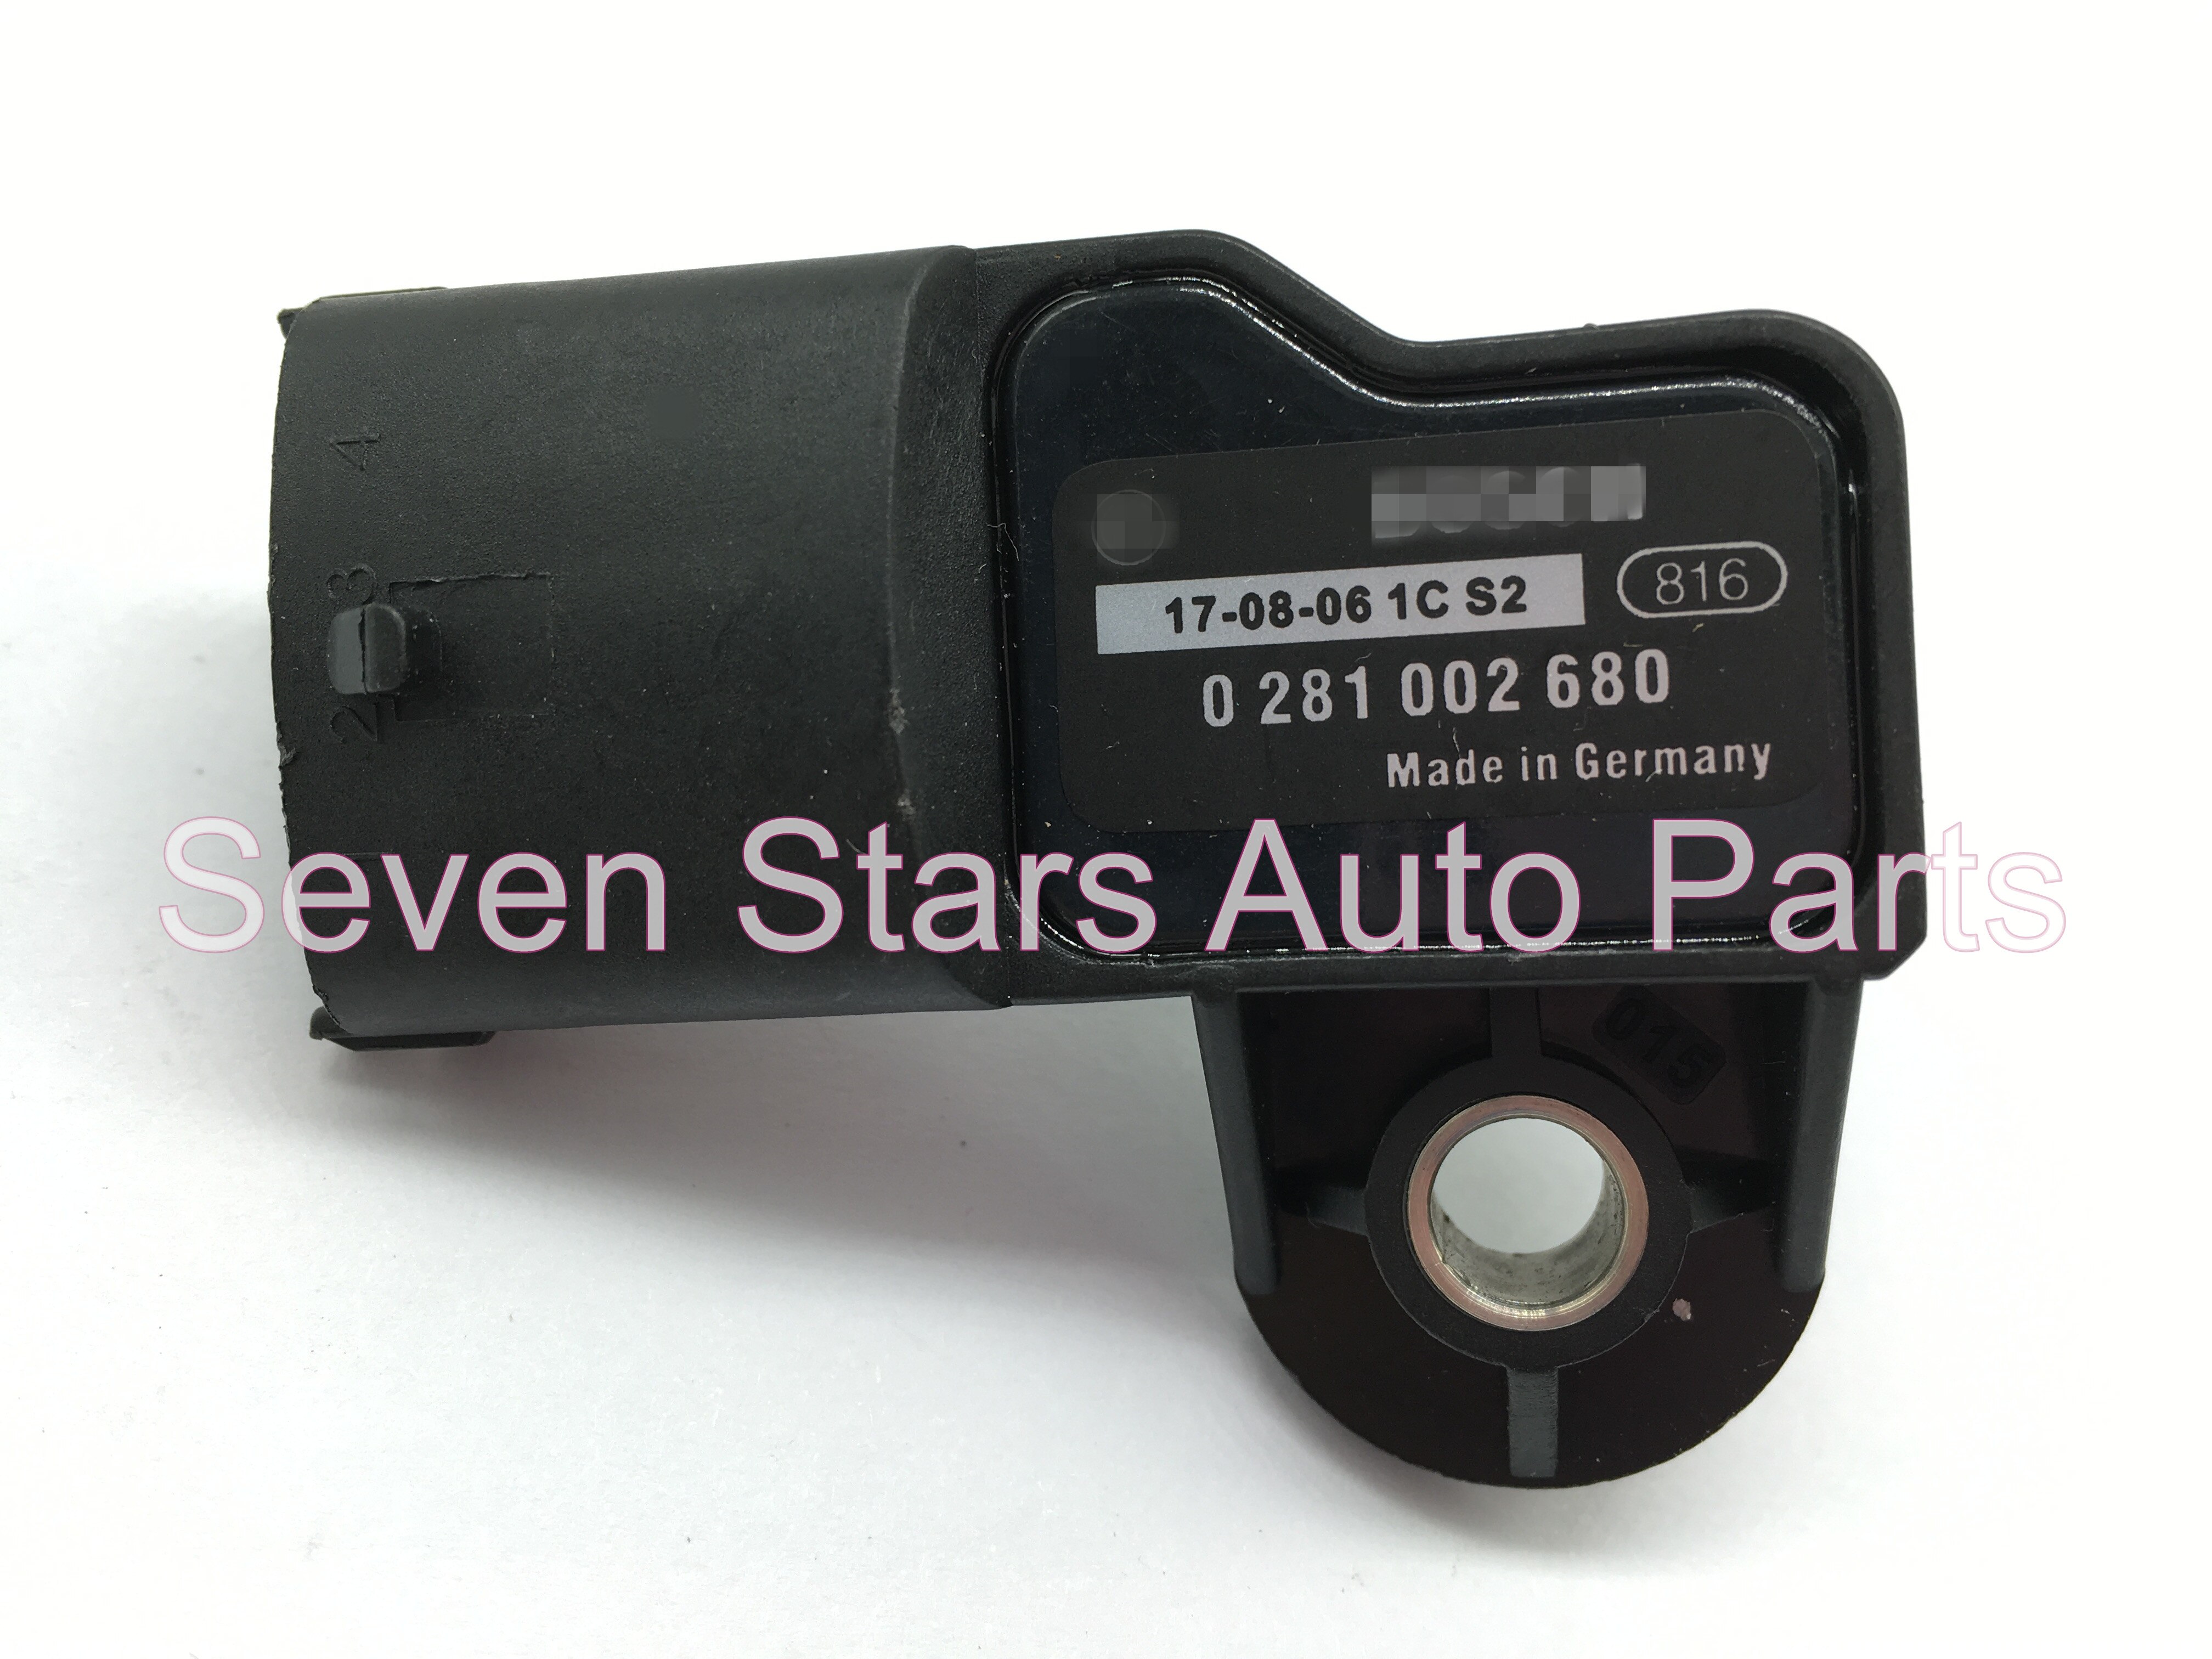 เซ็นเซอร์ความดันไอดี/เซ็นเซอร์แผนที่สำหรับมาสด้า OEM #0281002680 WE01-18-211=Intake Pressure Sensor/ MAP sensor for Mazda OEM# 0281002680 WE01-18-211